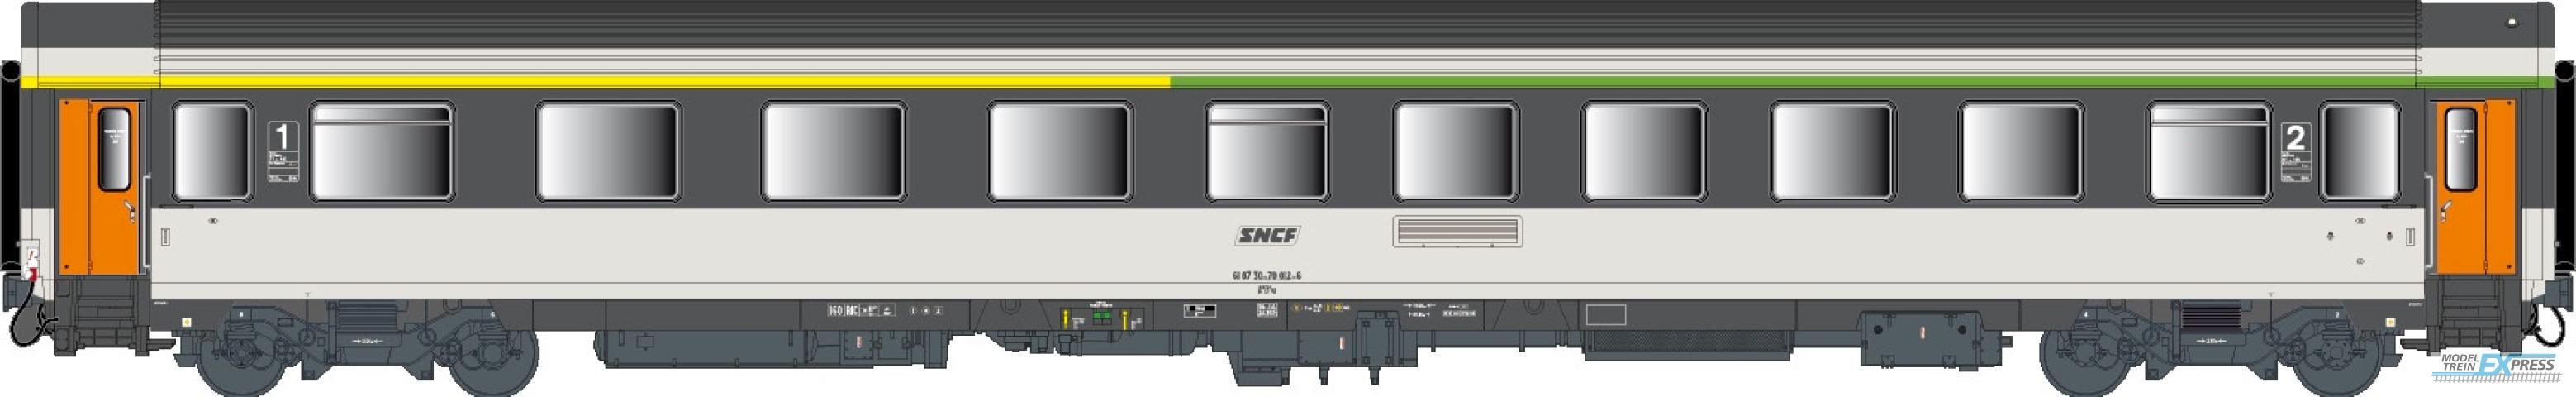 LS Models 41301 Vu, Corail, omkaderd logo  /  Ep. IV-V  /  SNCF  /  HO  /  DC  /  1 P.